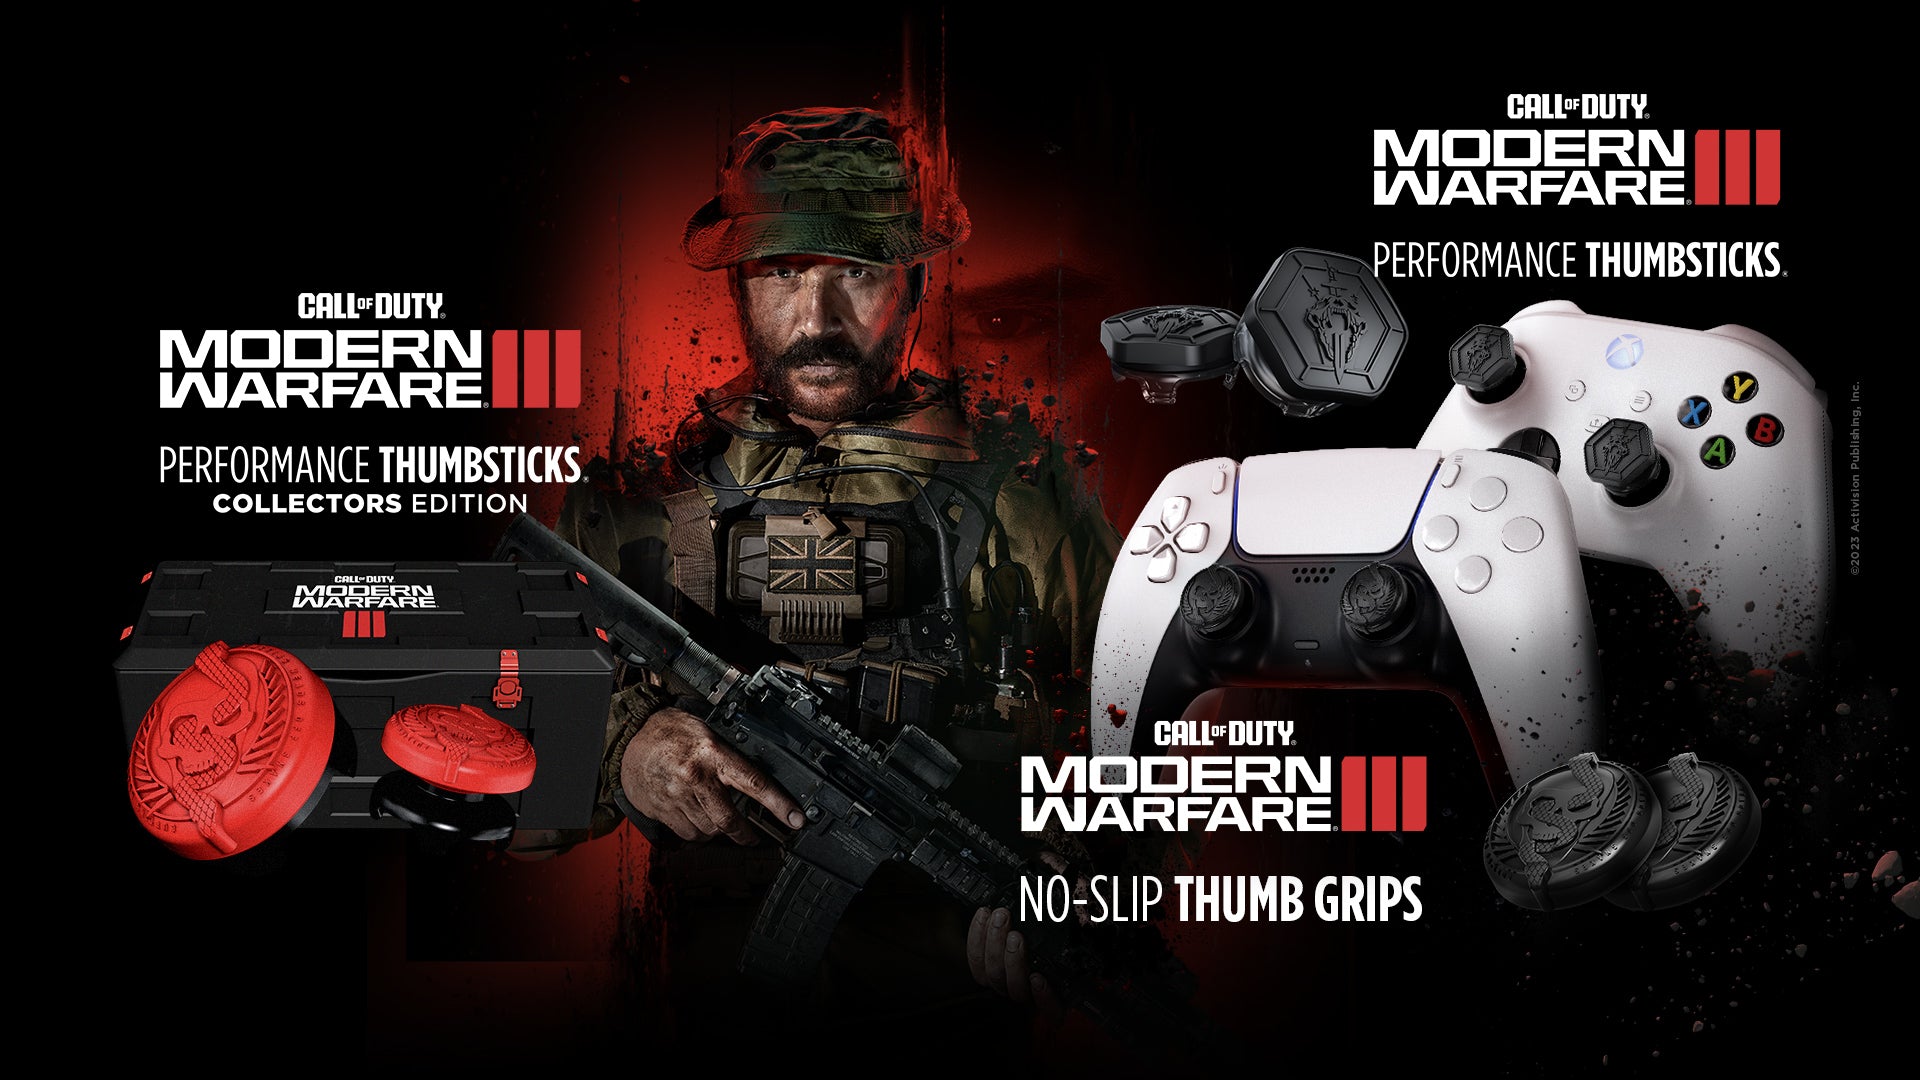 Modern Warfare III Thumb Grips and Collectors Edition Thumbsticks –  KontrolFreek